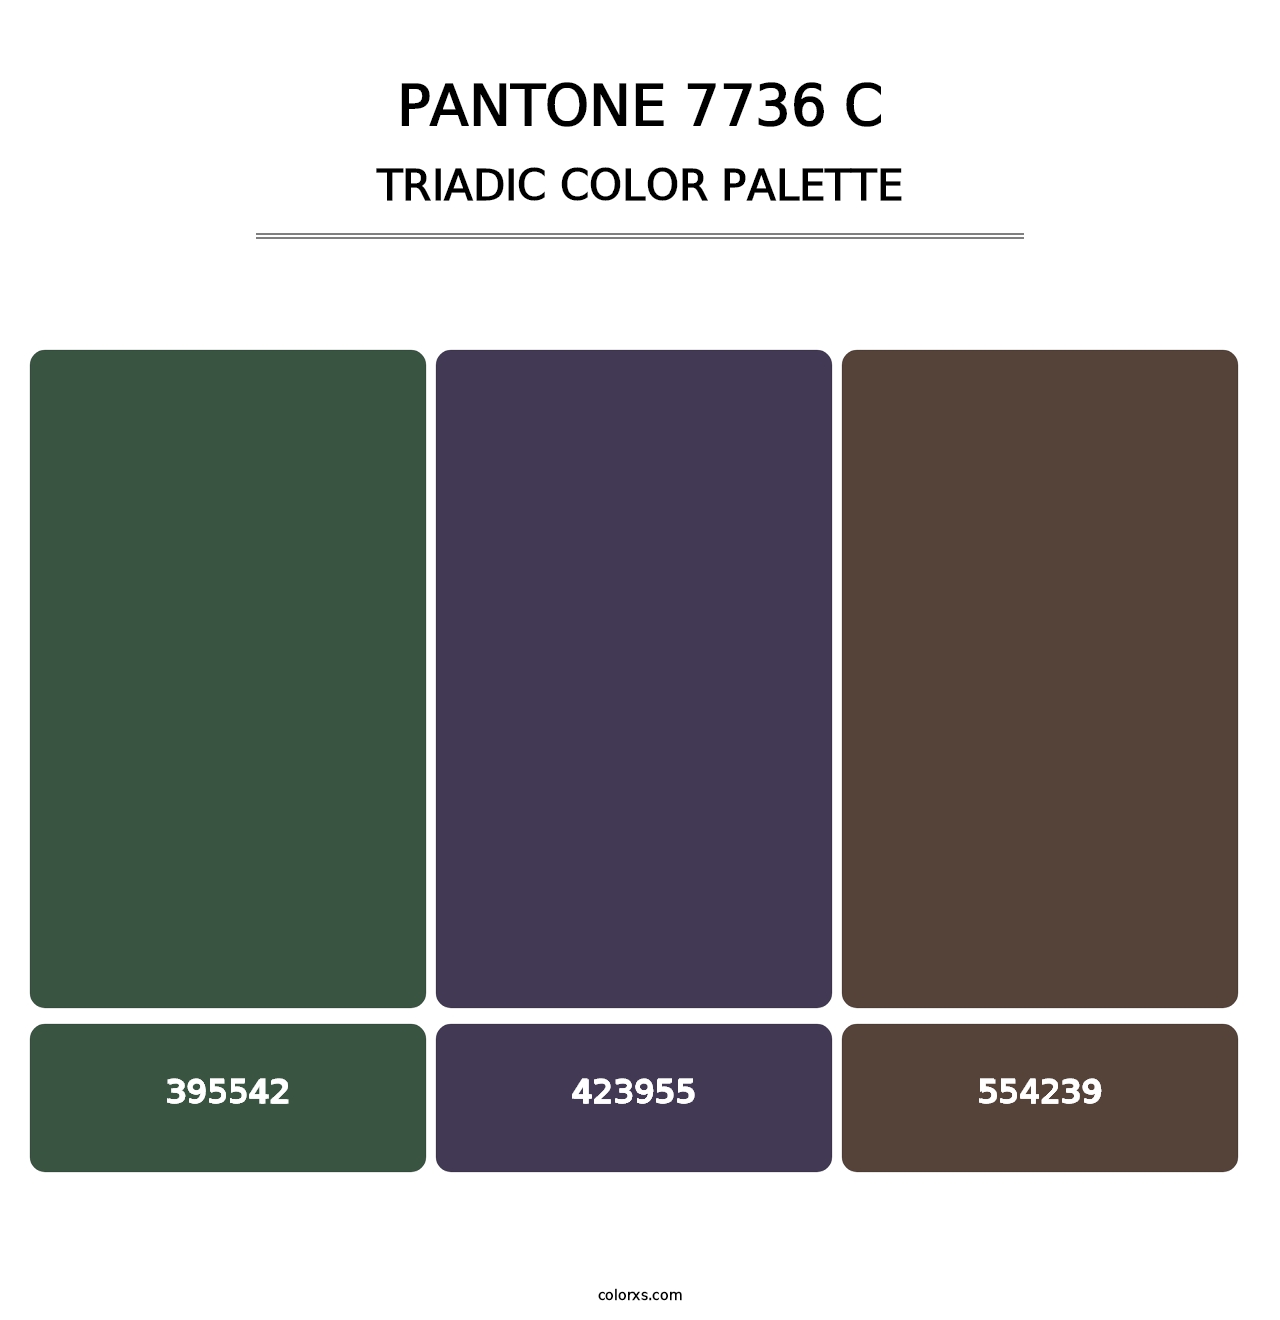 PANTONE 7736 C - Triadic Color Palette